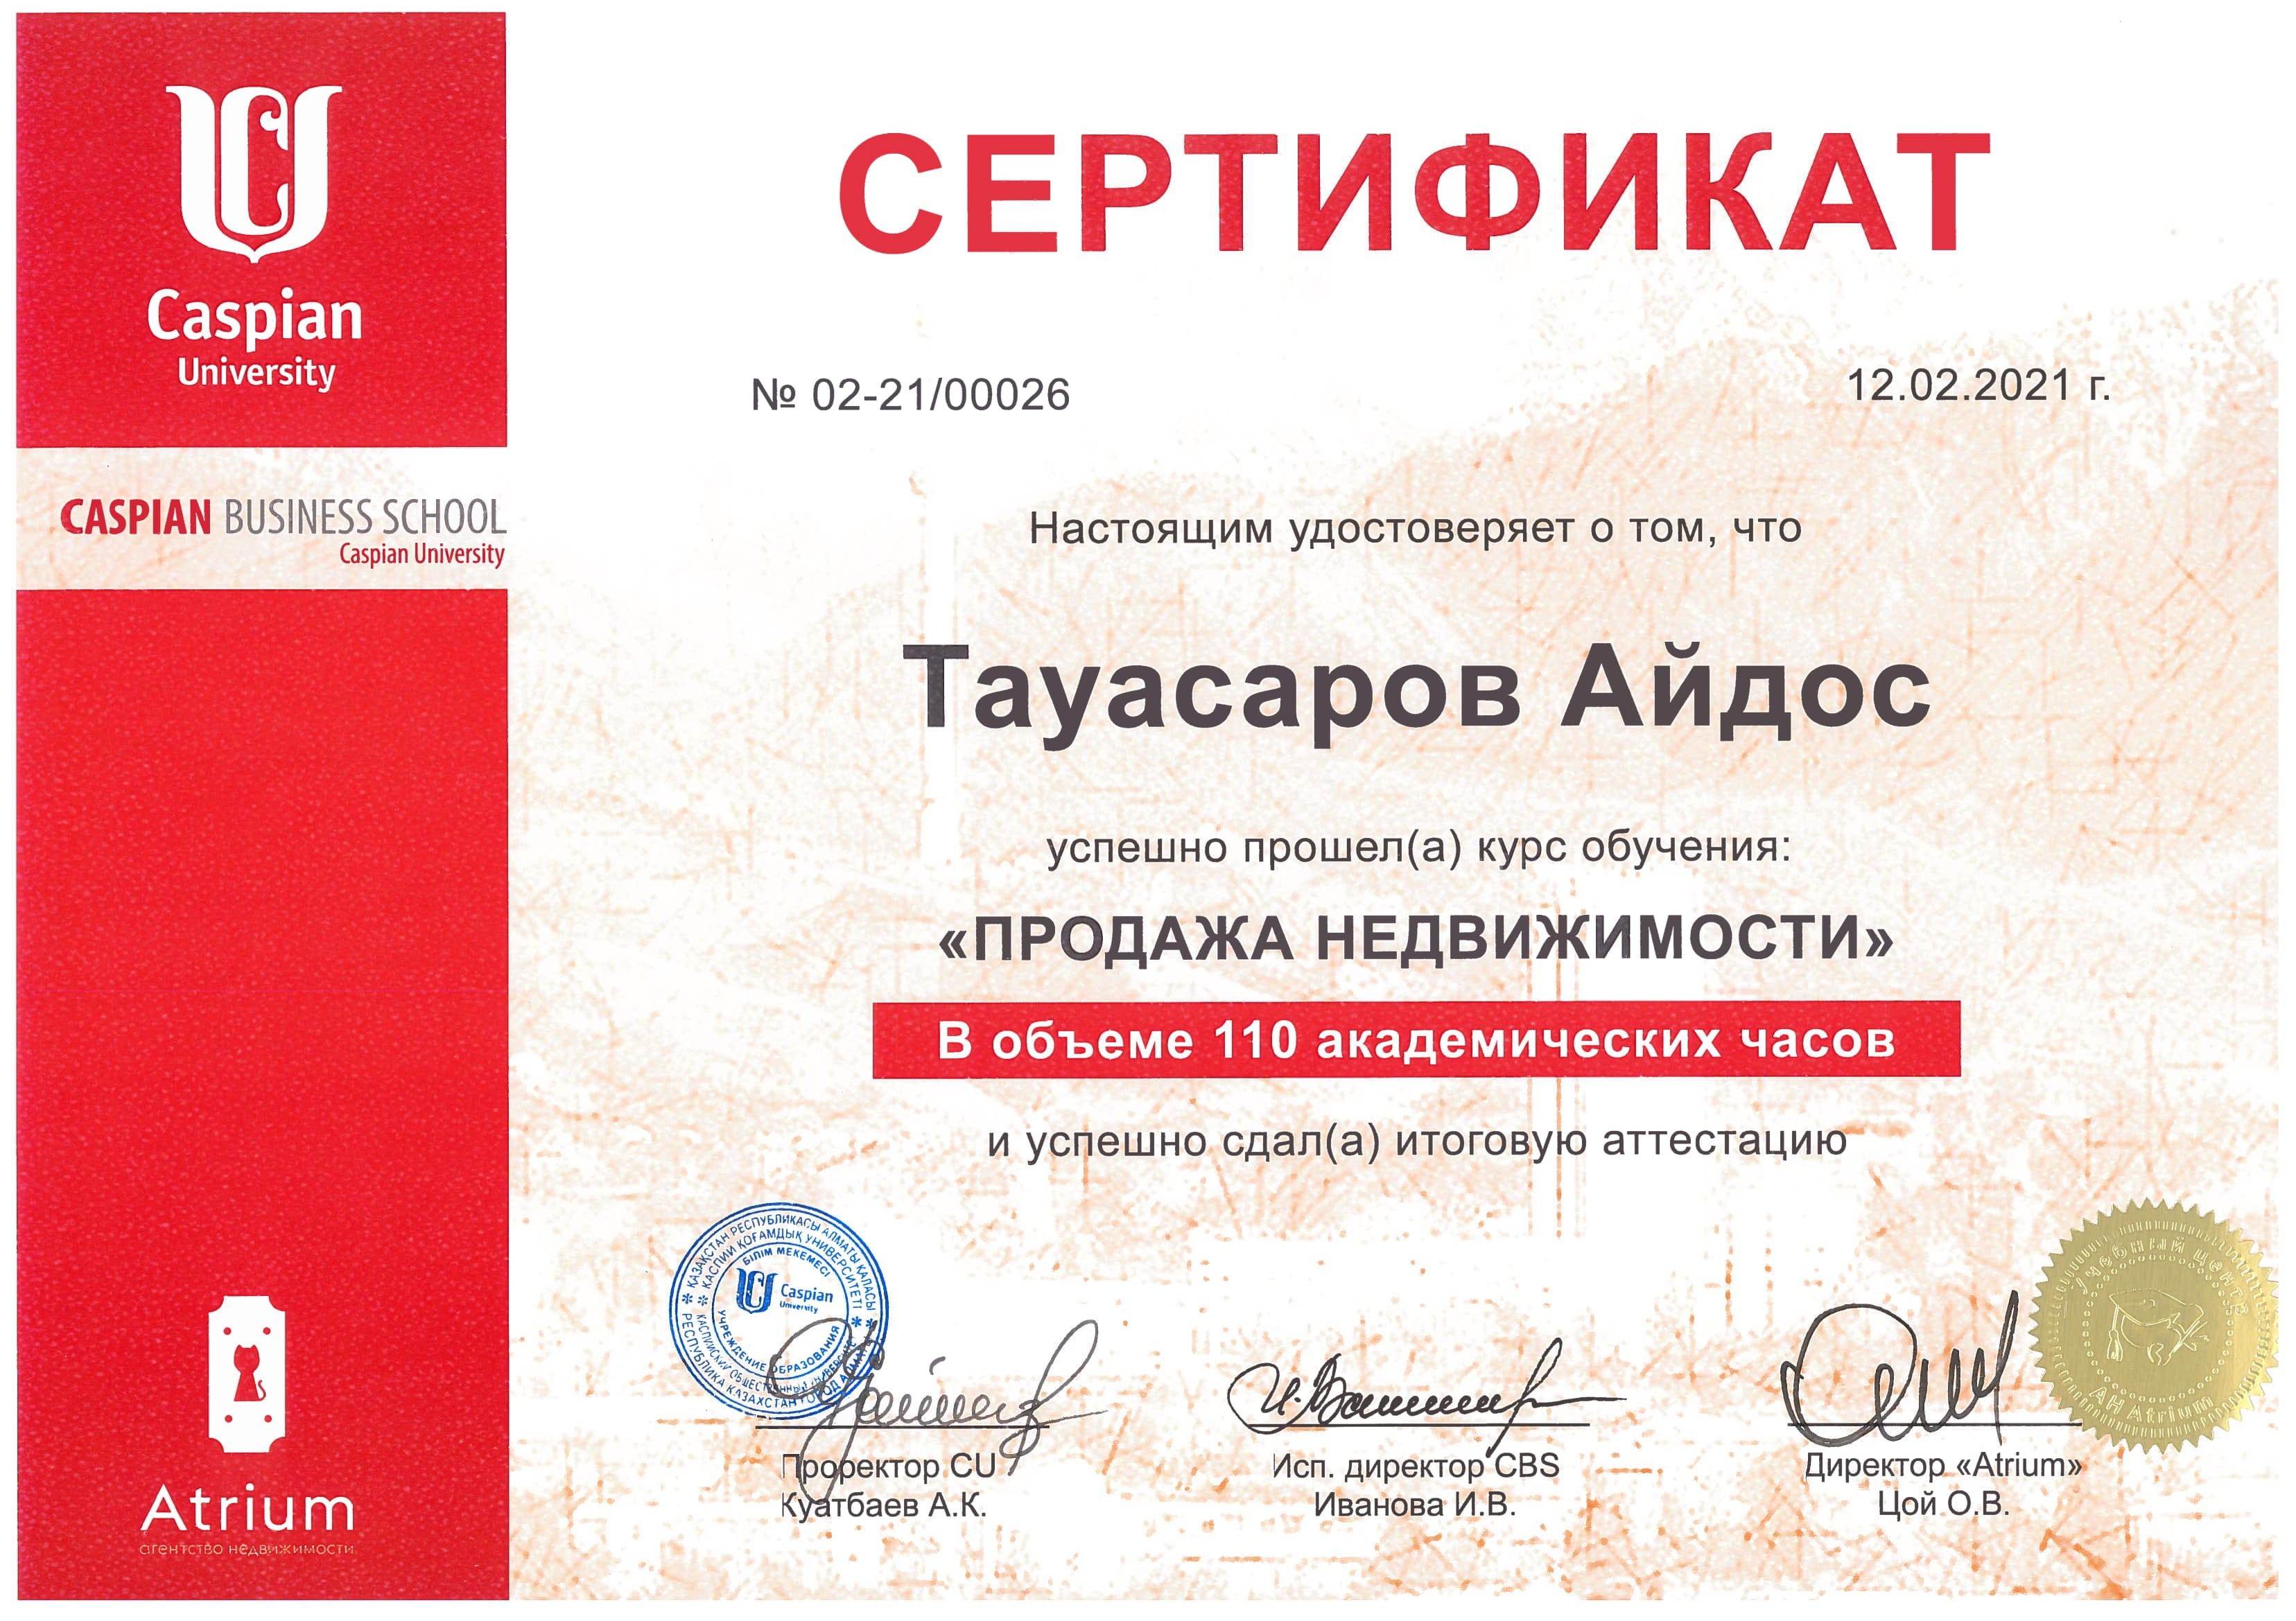 Сертификат о прохождении курса обучения "Продажа недвижимости"